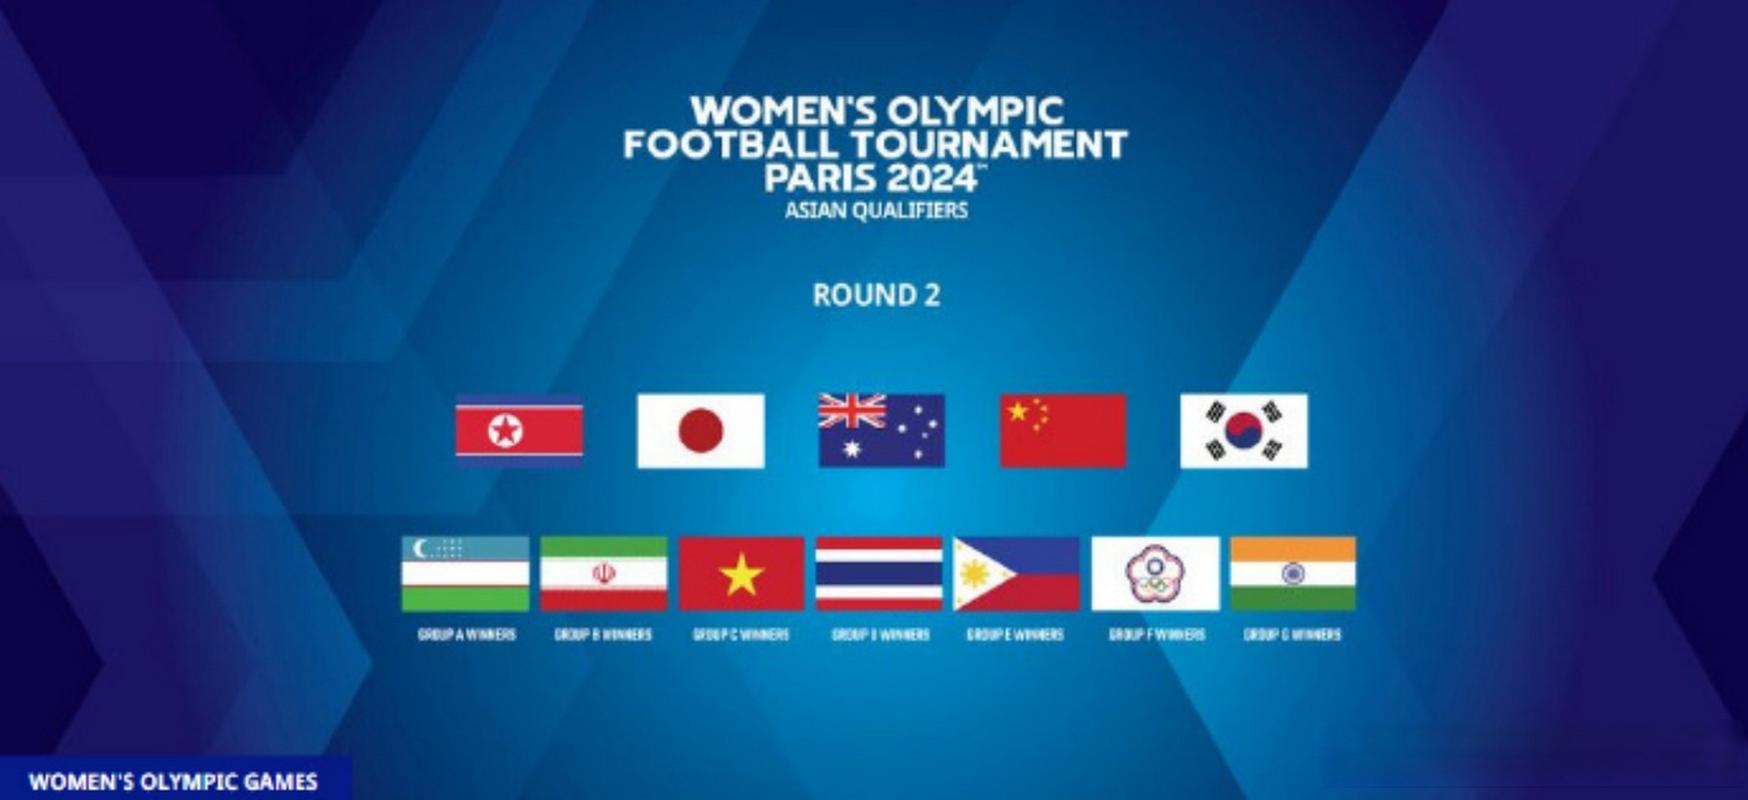 u20女足亚预赛第二阶段赛程